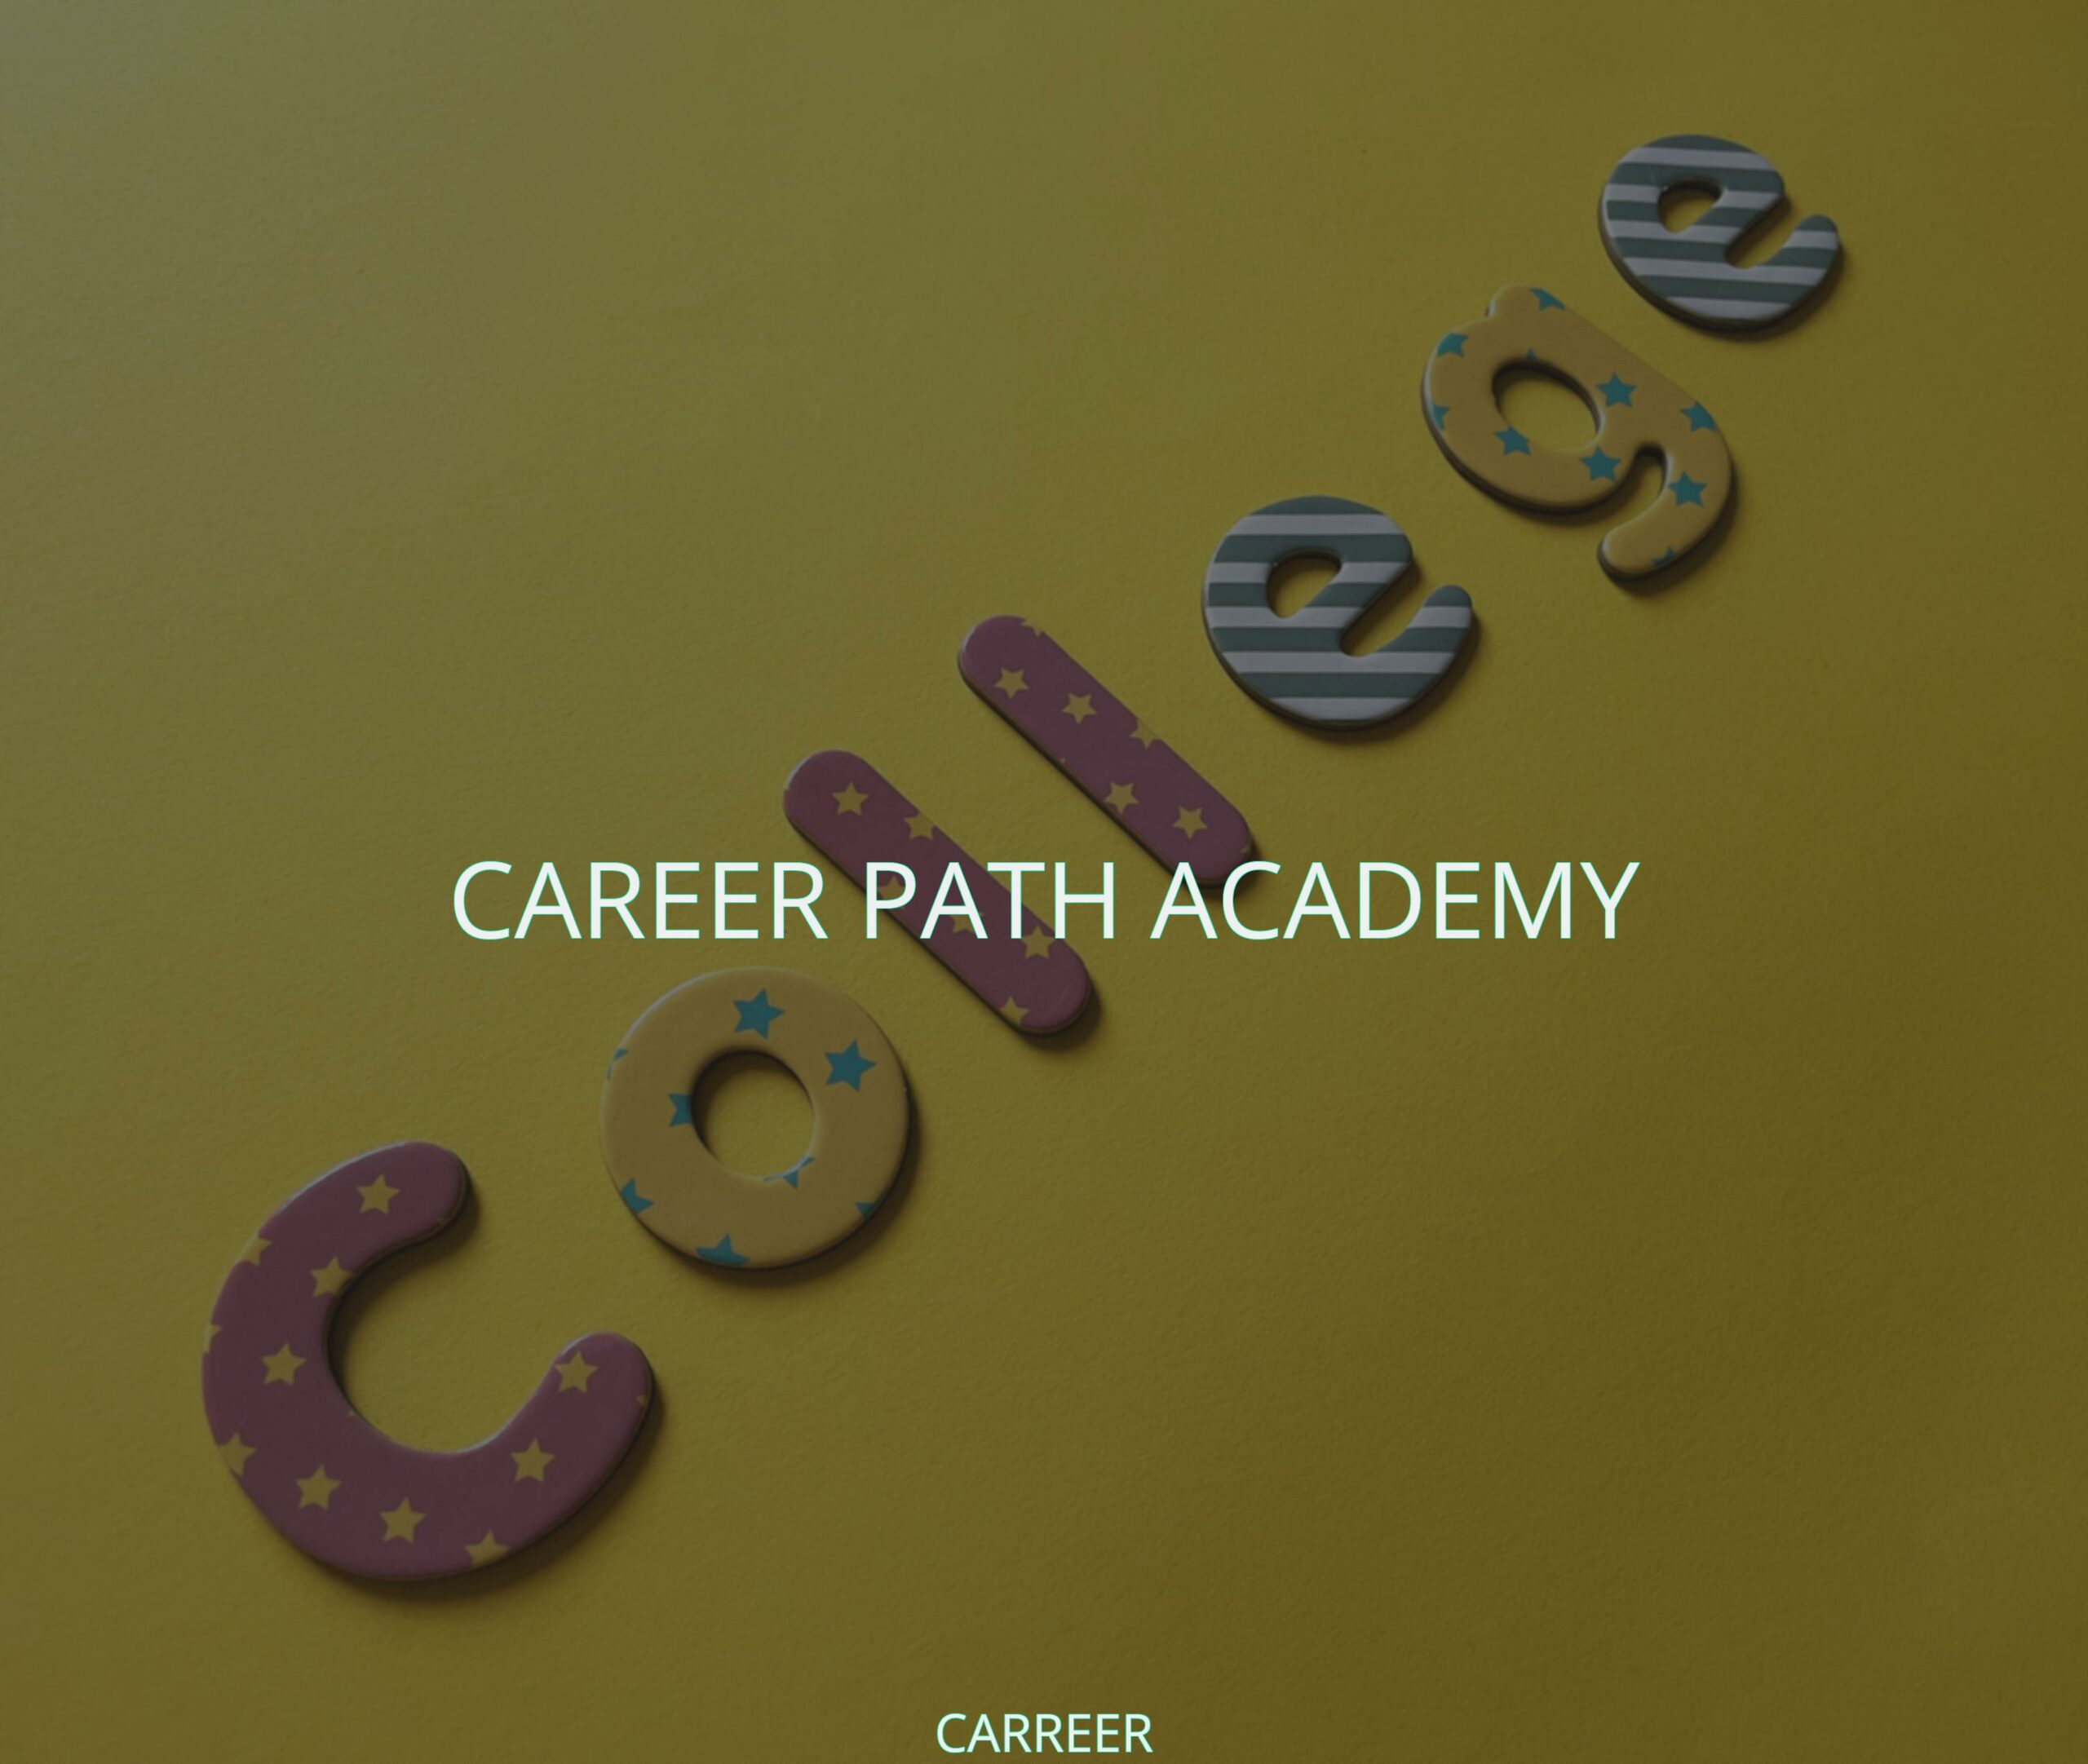 Career path academy